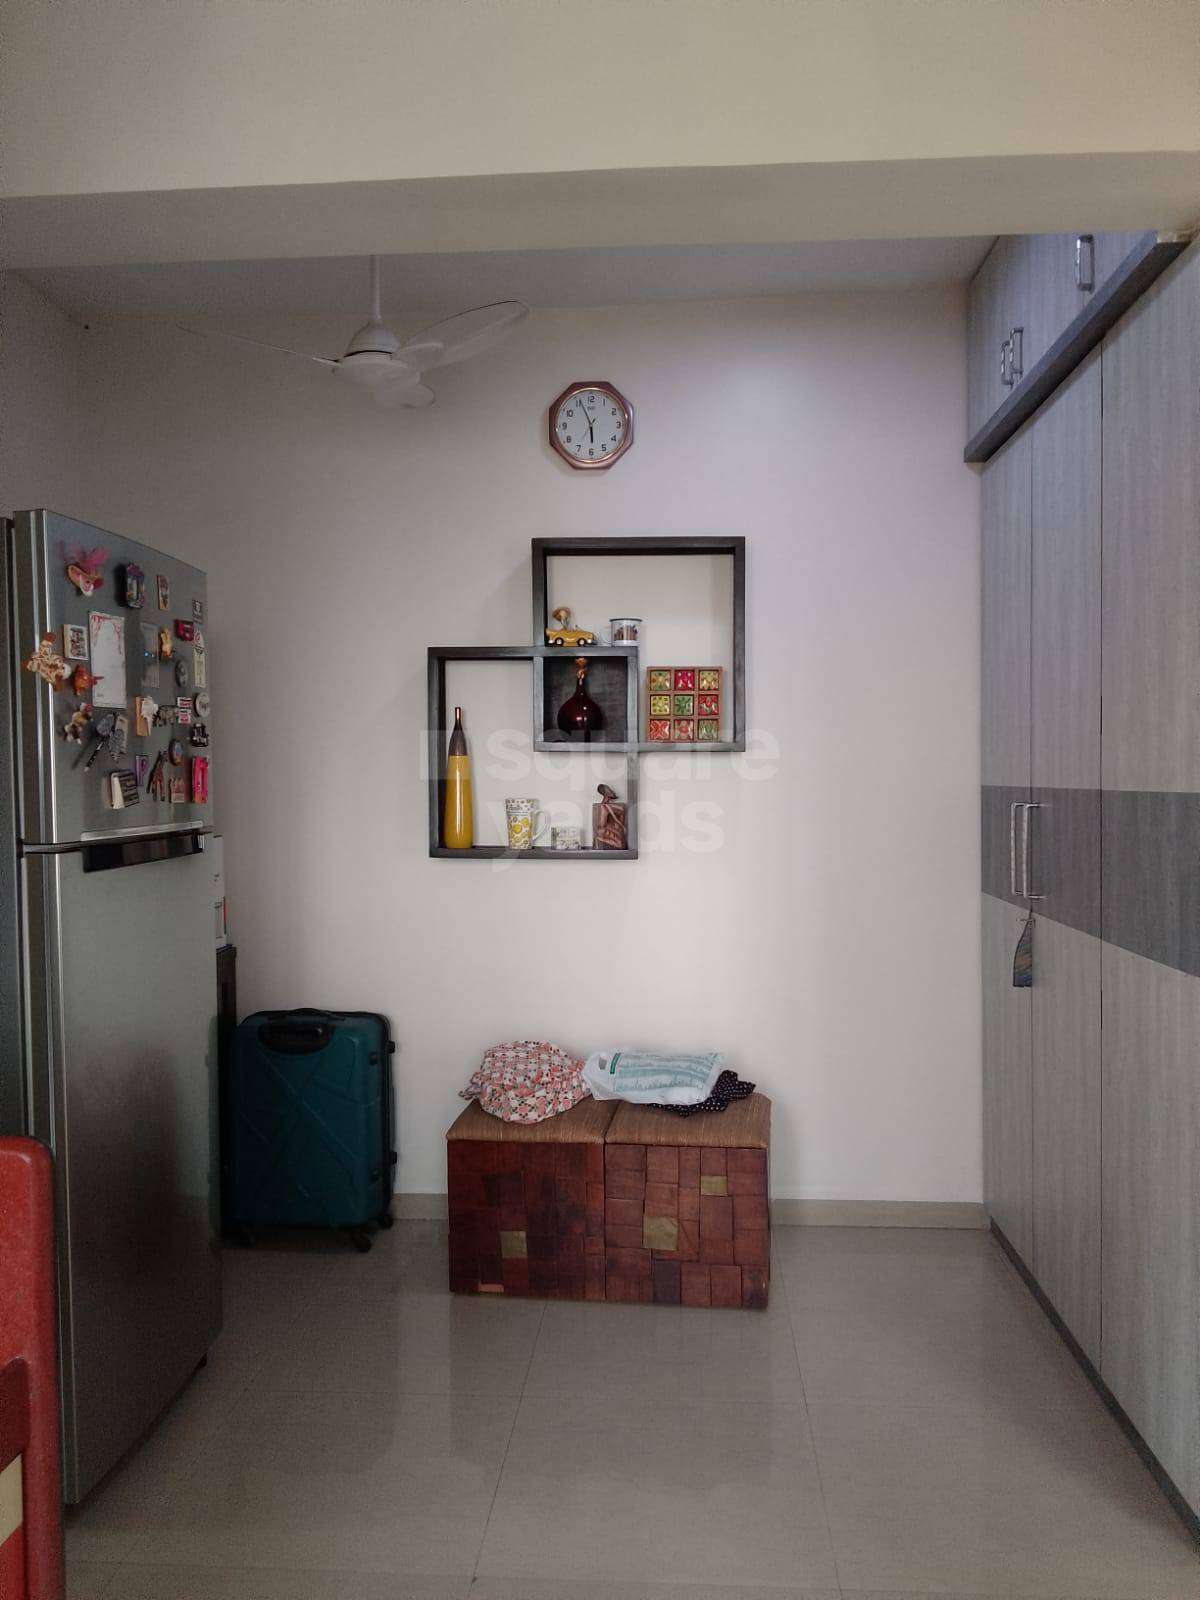 Rental Studio 225 Sq.Ft. Apartment in Prabhadevi Mumbai - 5388824